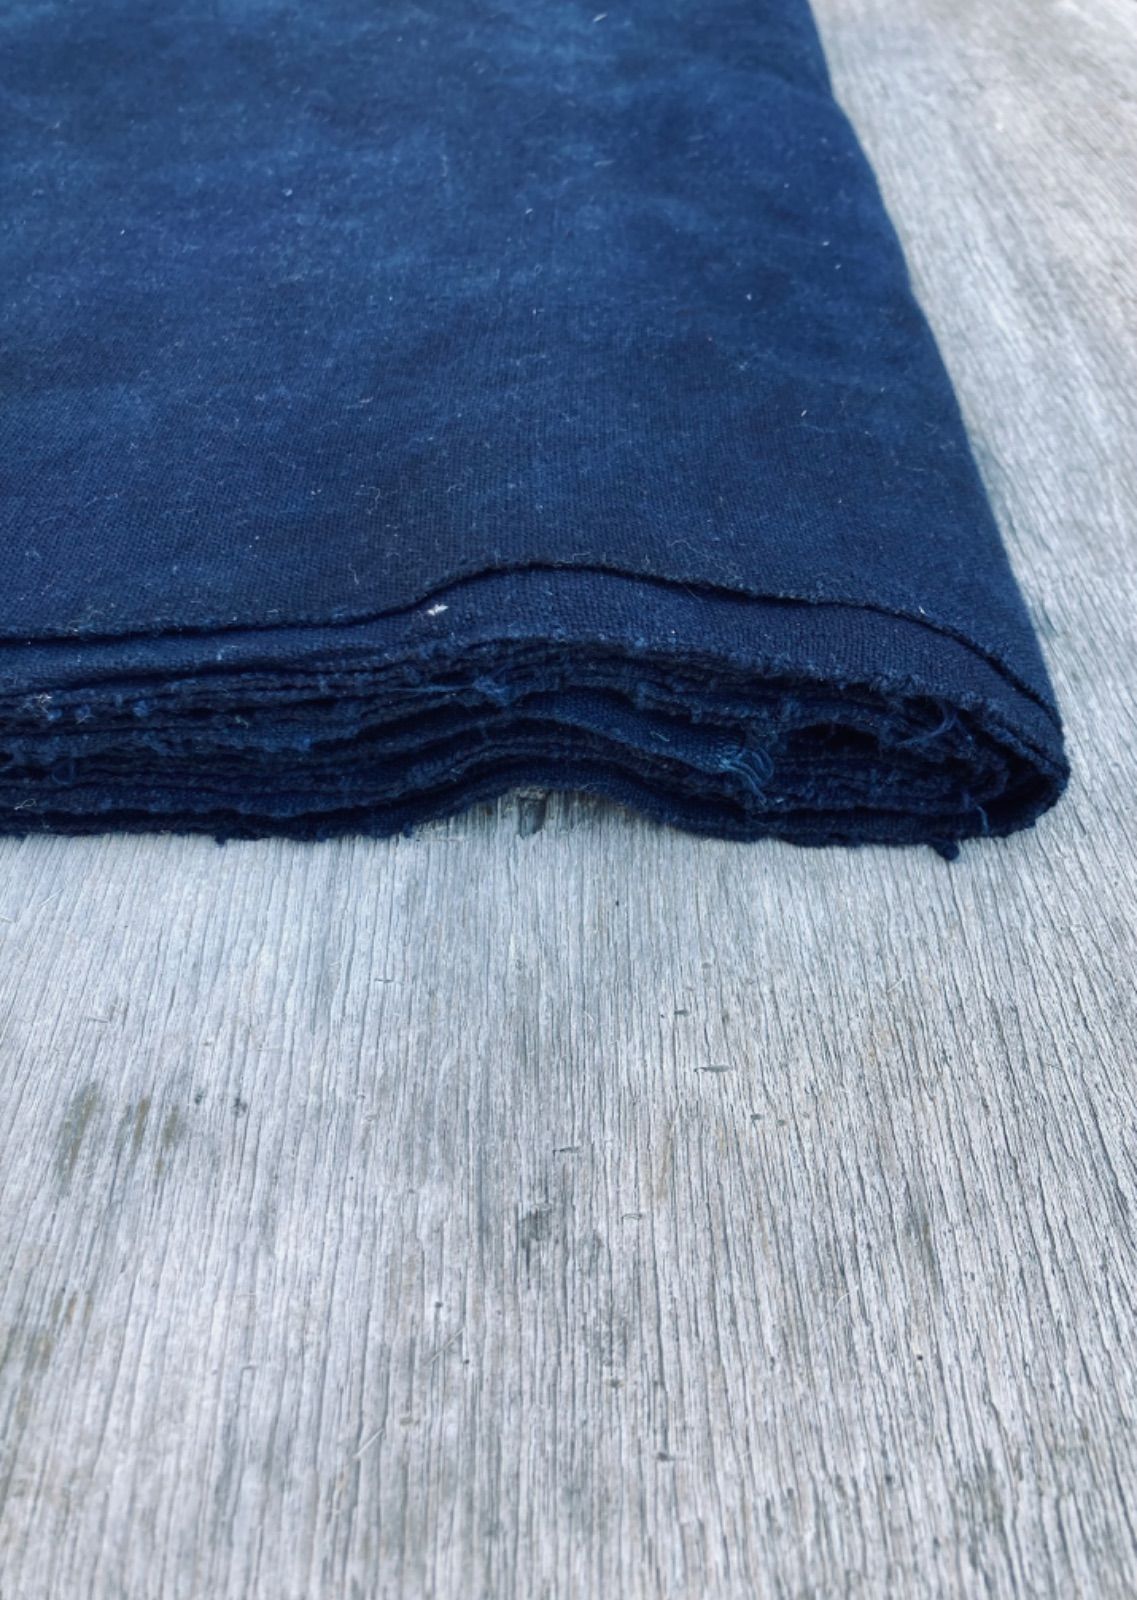 大勧め 春セール RFB−31 黒藍 7m反物 レンテン族布 藍染め手織り 